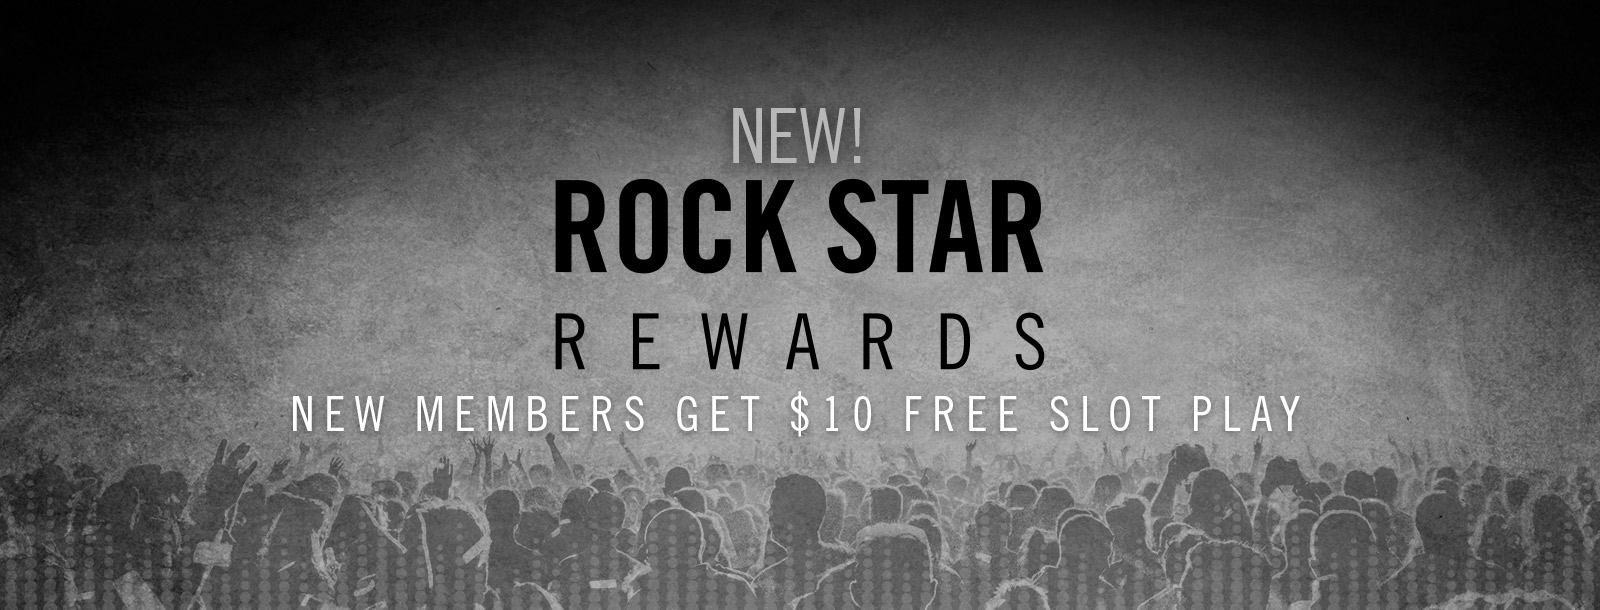 hard rock sioux city rock star rewards slider